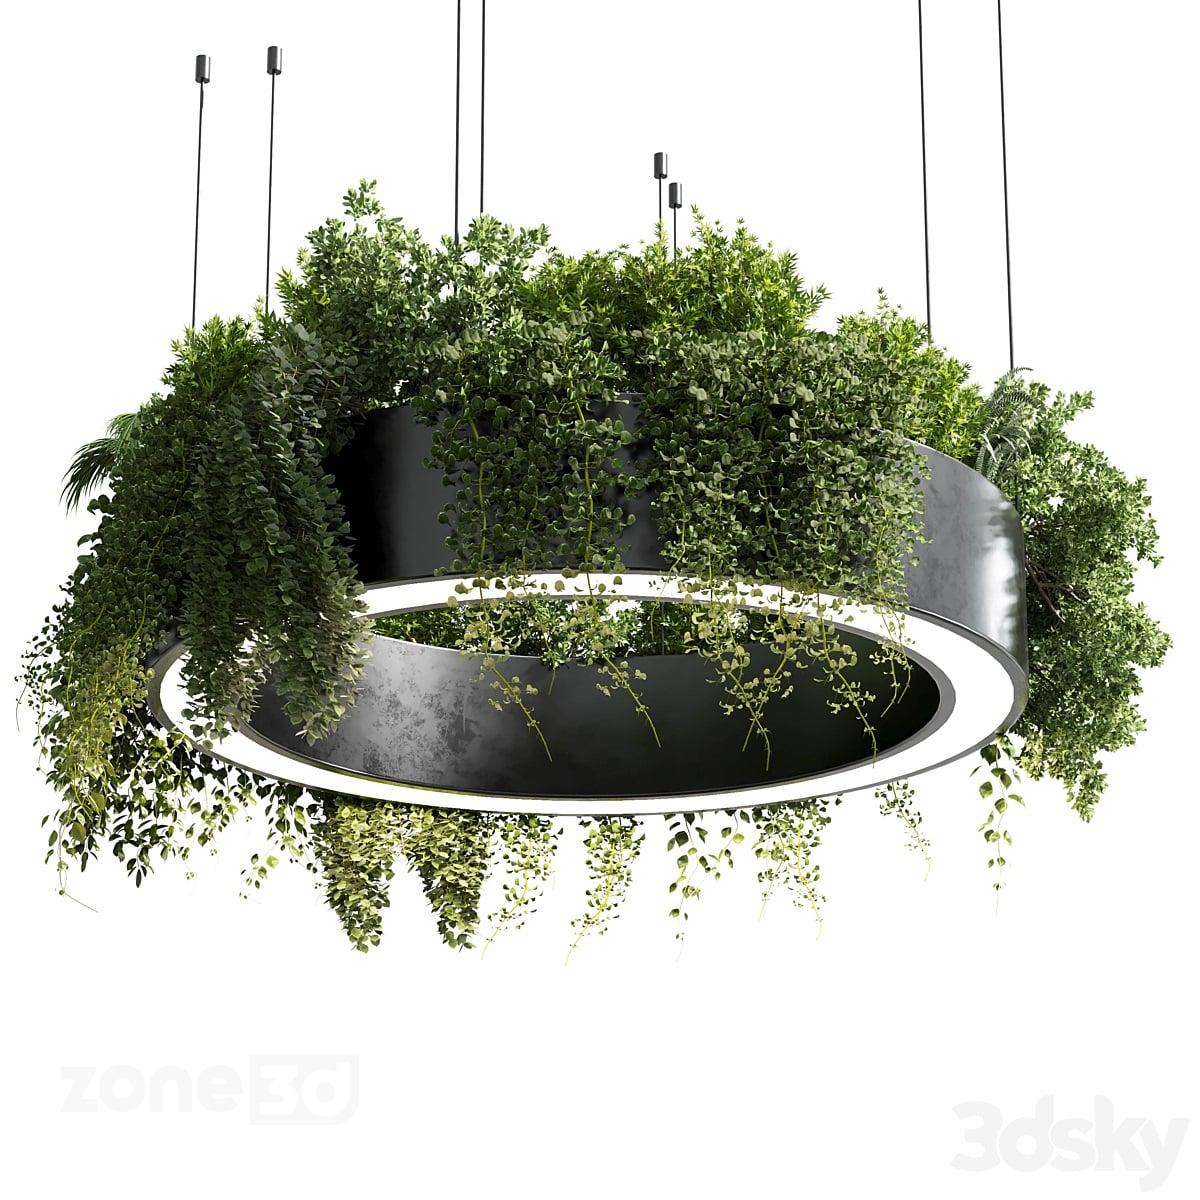 آبجکت فلاور باکس و چراغ آویز گرد فلزی مدرن به همراه گیاهان